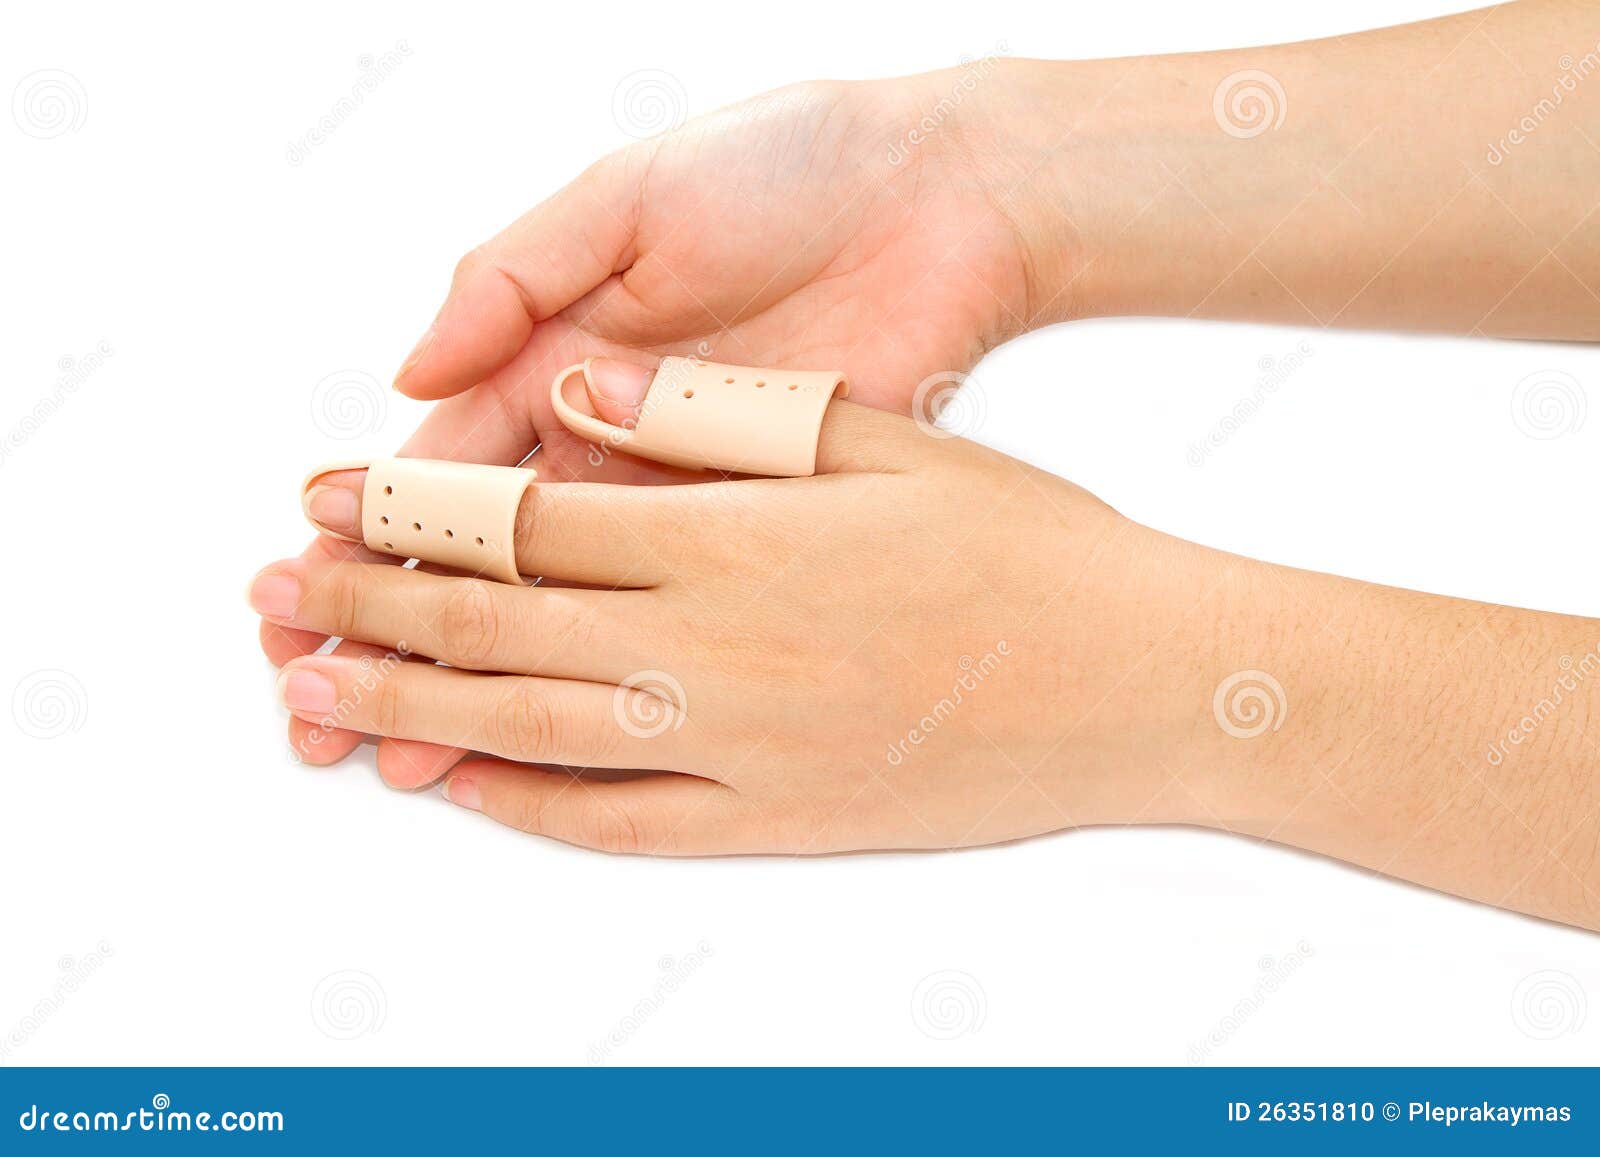 平时手指被割伤应该怎么处理? - 知乎